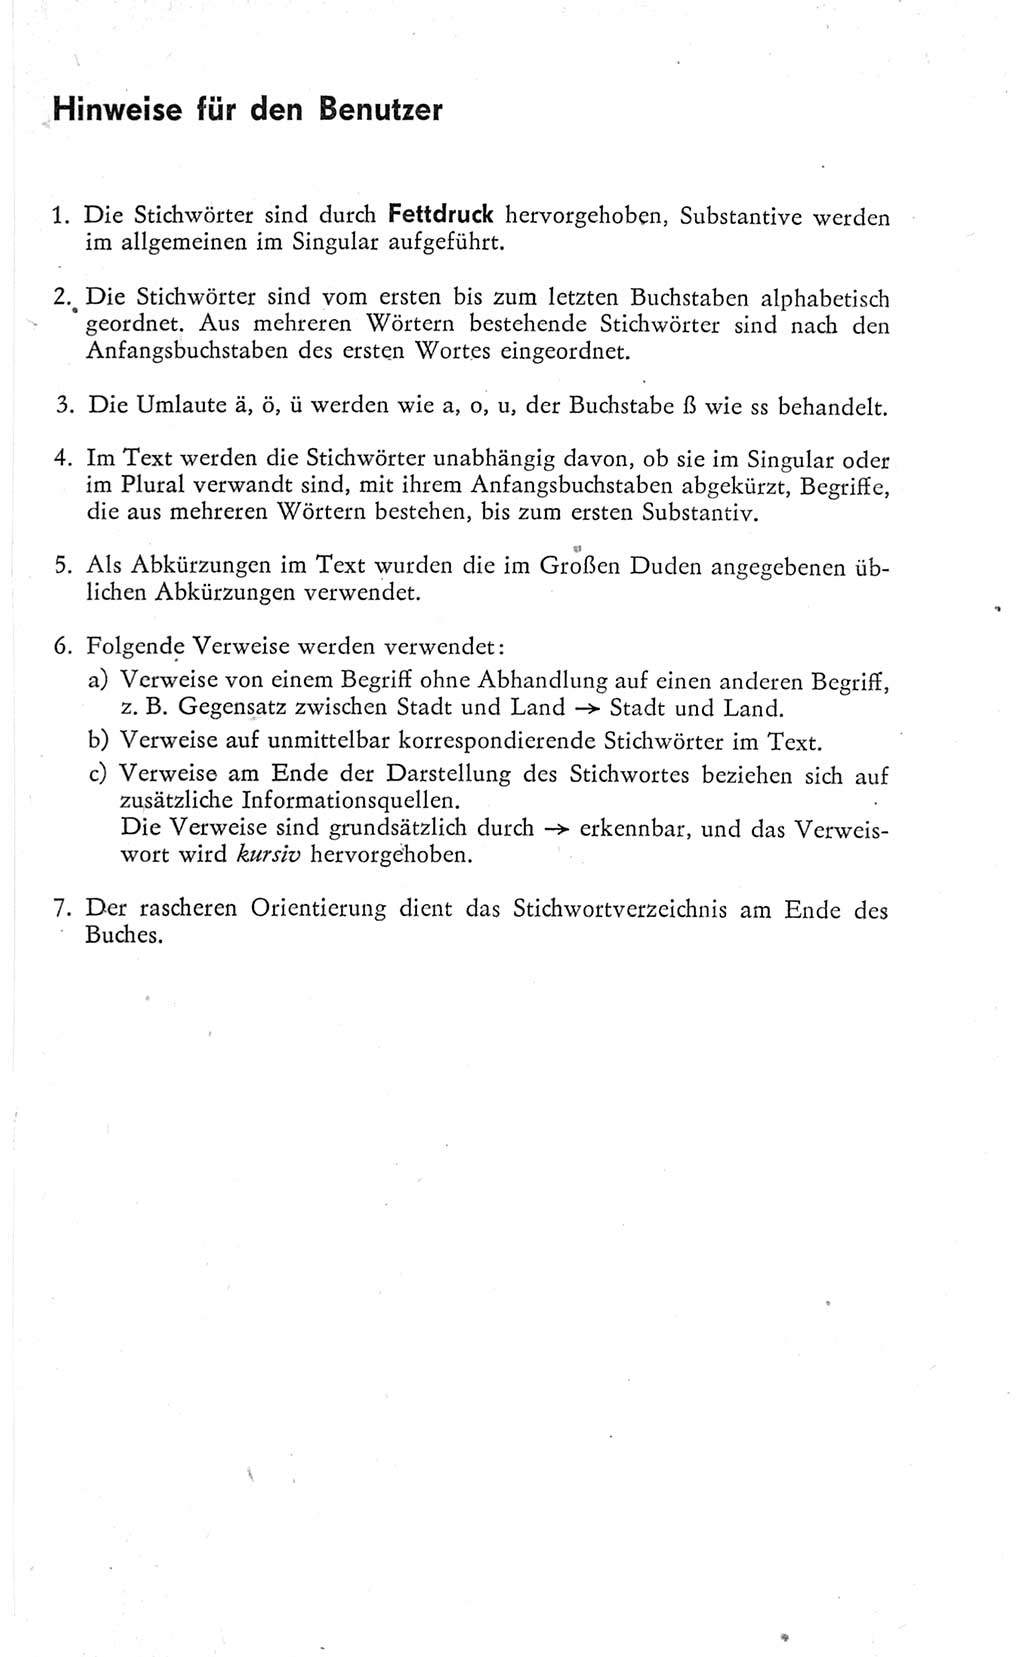 Kleines Wörterbuch der marxistisch-leninistischen Philosophie [Deutsche Demokratische Republik (DDR)] 1974, Seite 7 (Kl. Wb. ML Phil. DDR 1974, S. 7)